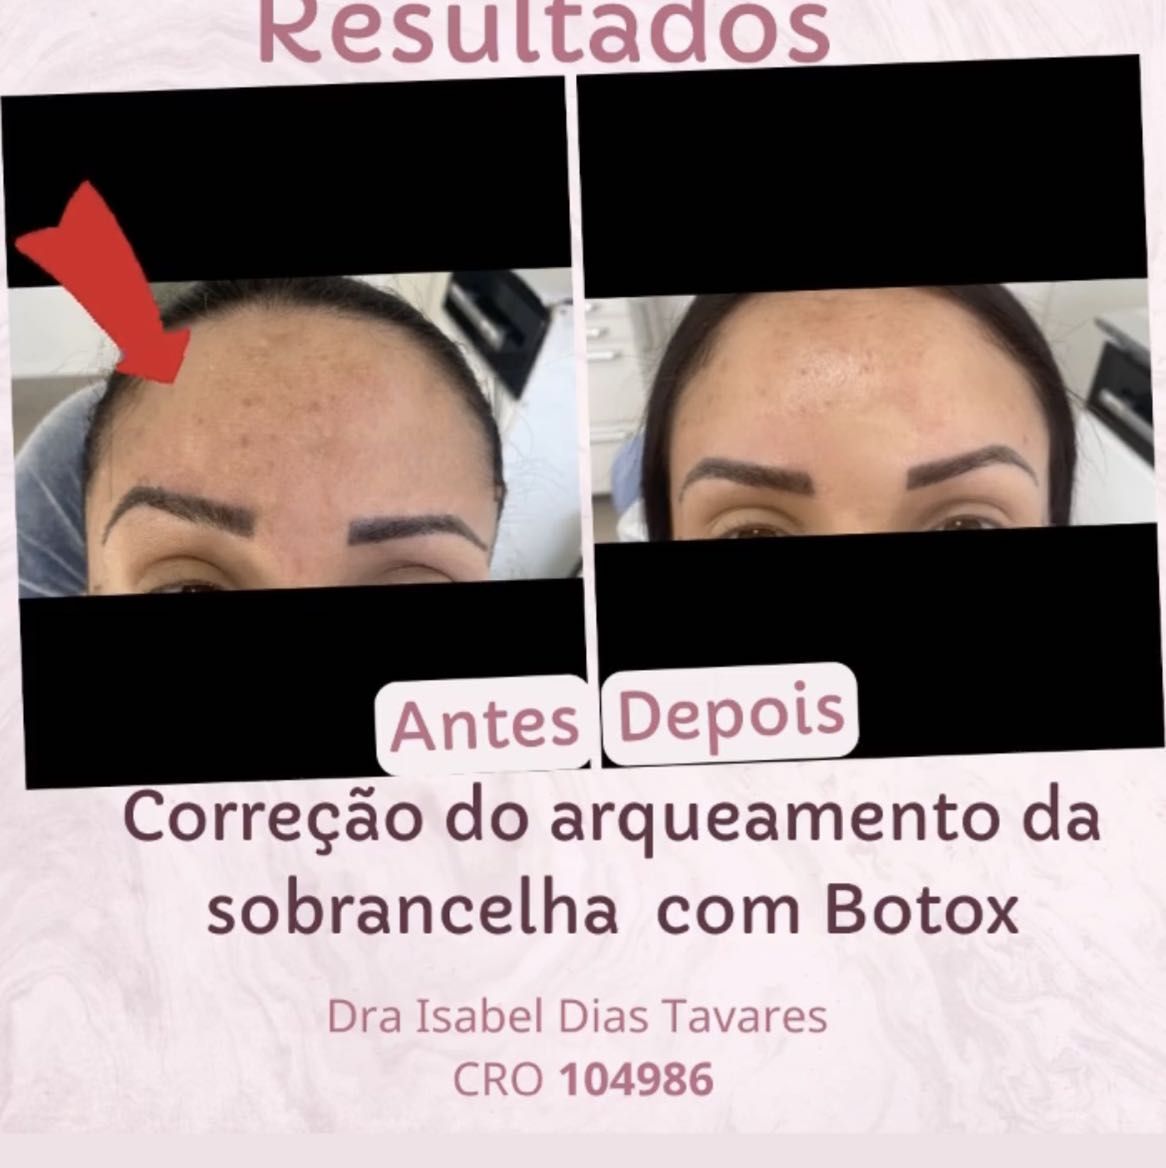 Portfólio de Botox facial- toxina botulínica!